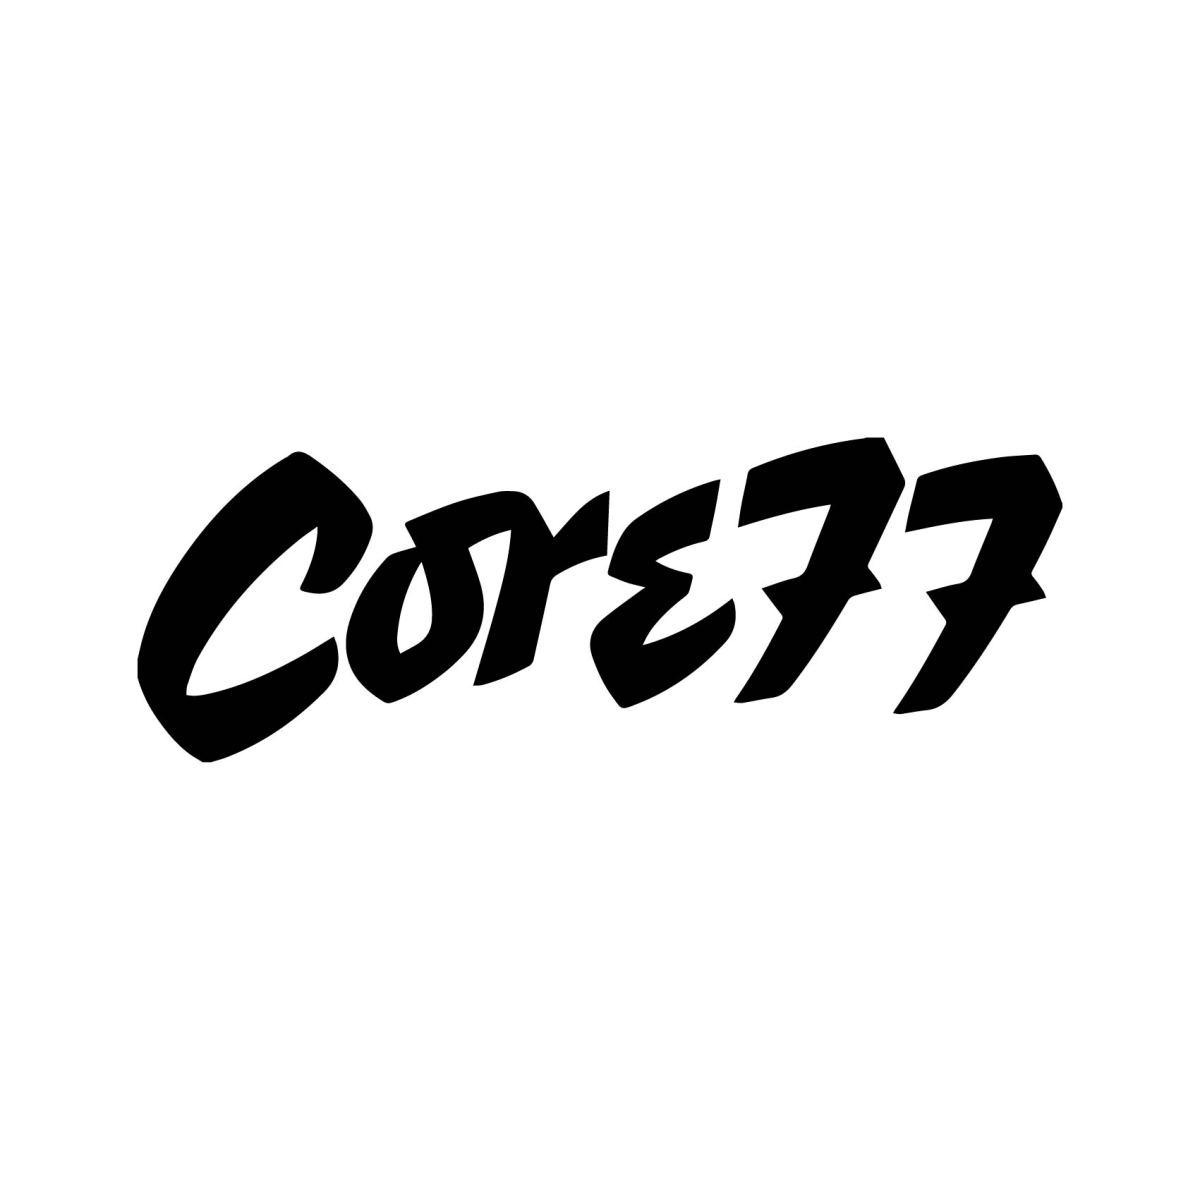 core77 logo.jpg